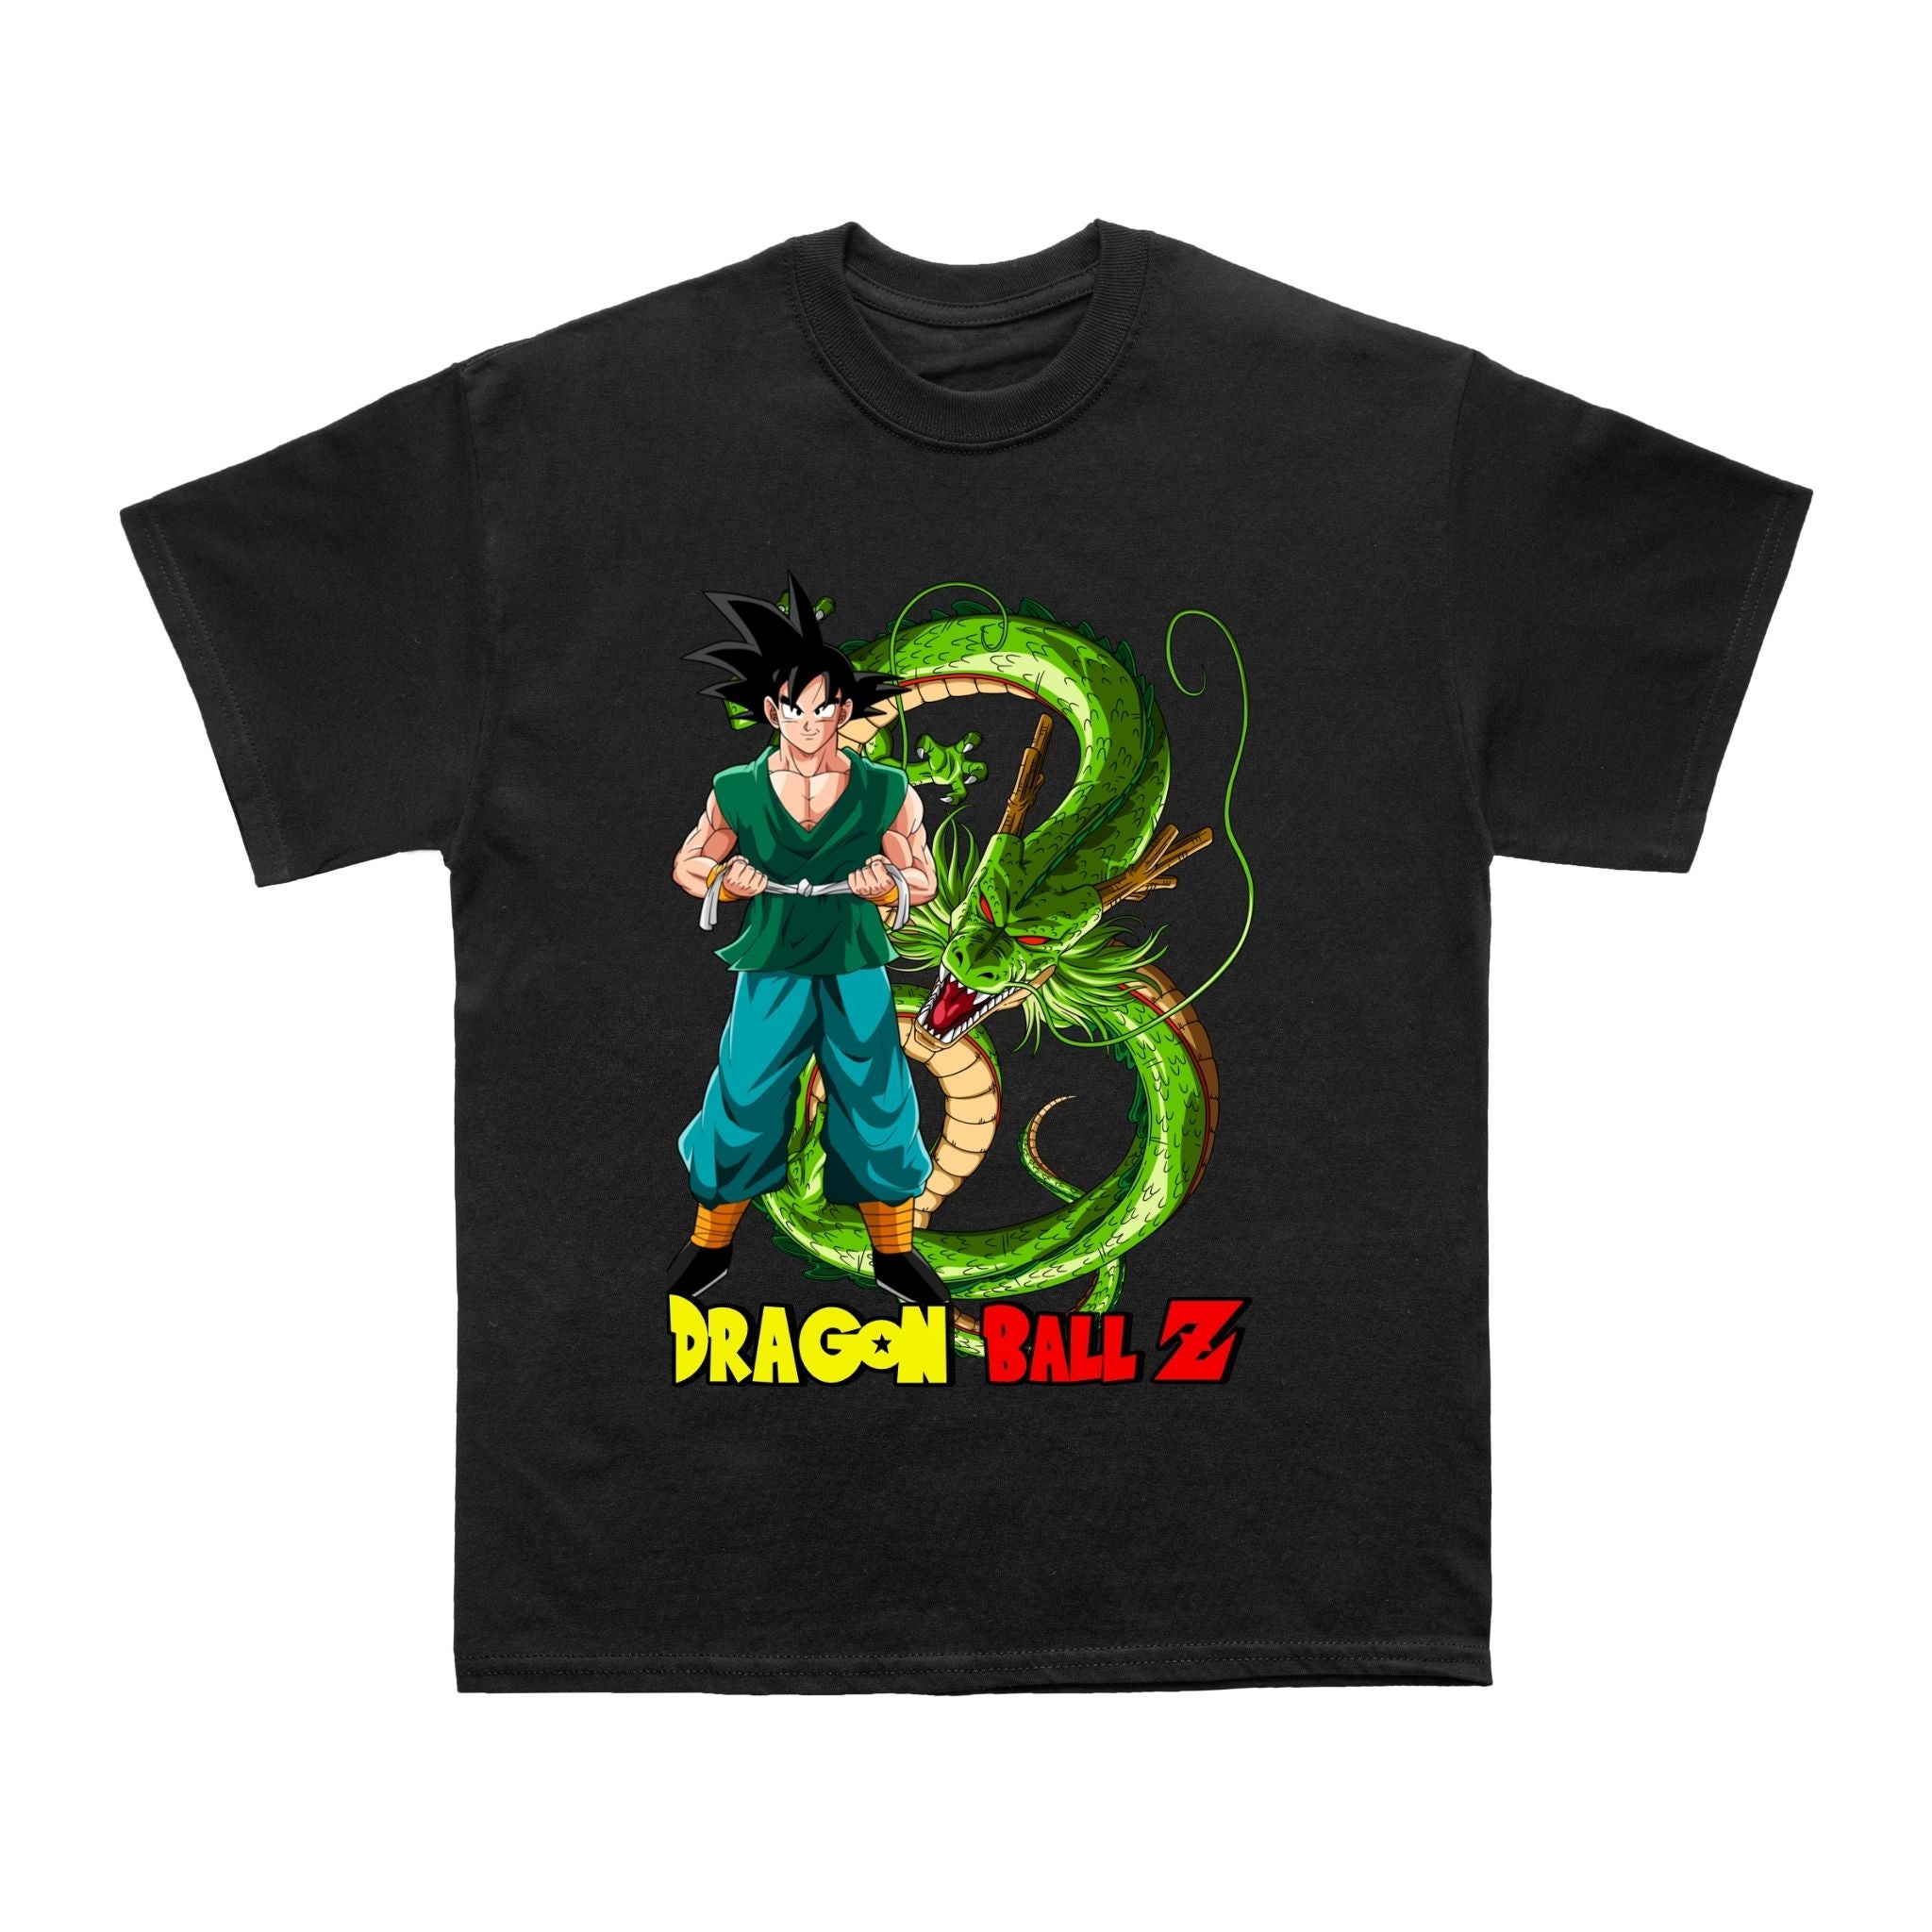 Anime Inspired T shirt